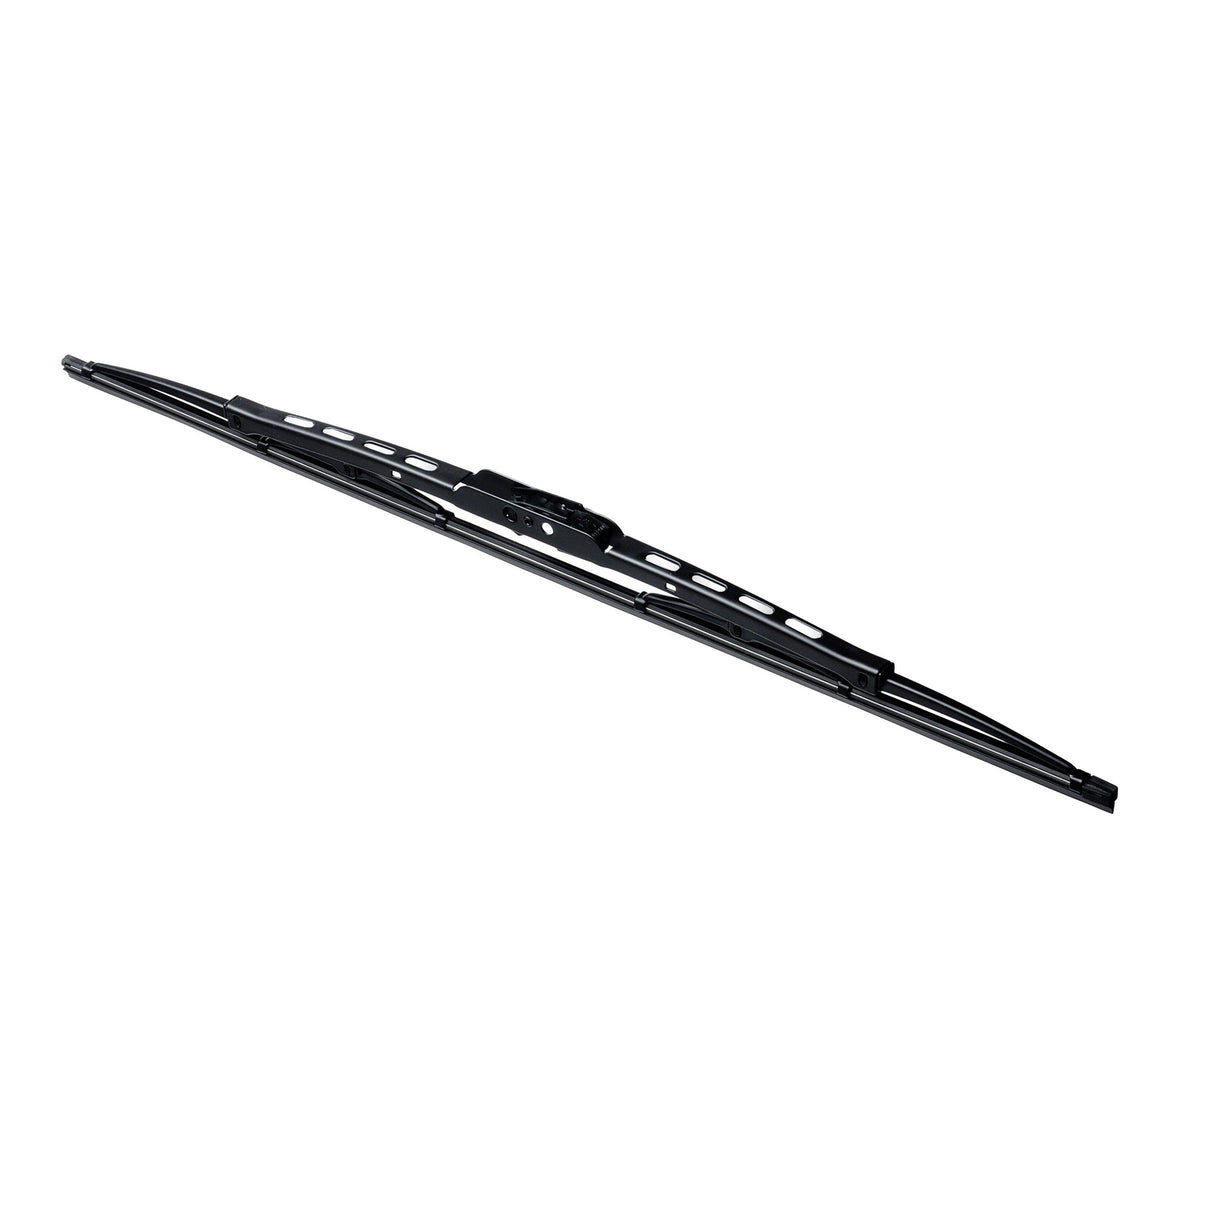 Autotex Premium M5 Conventional Wiper Blade - ClixAuto